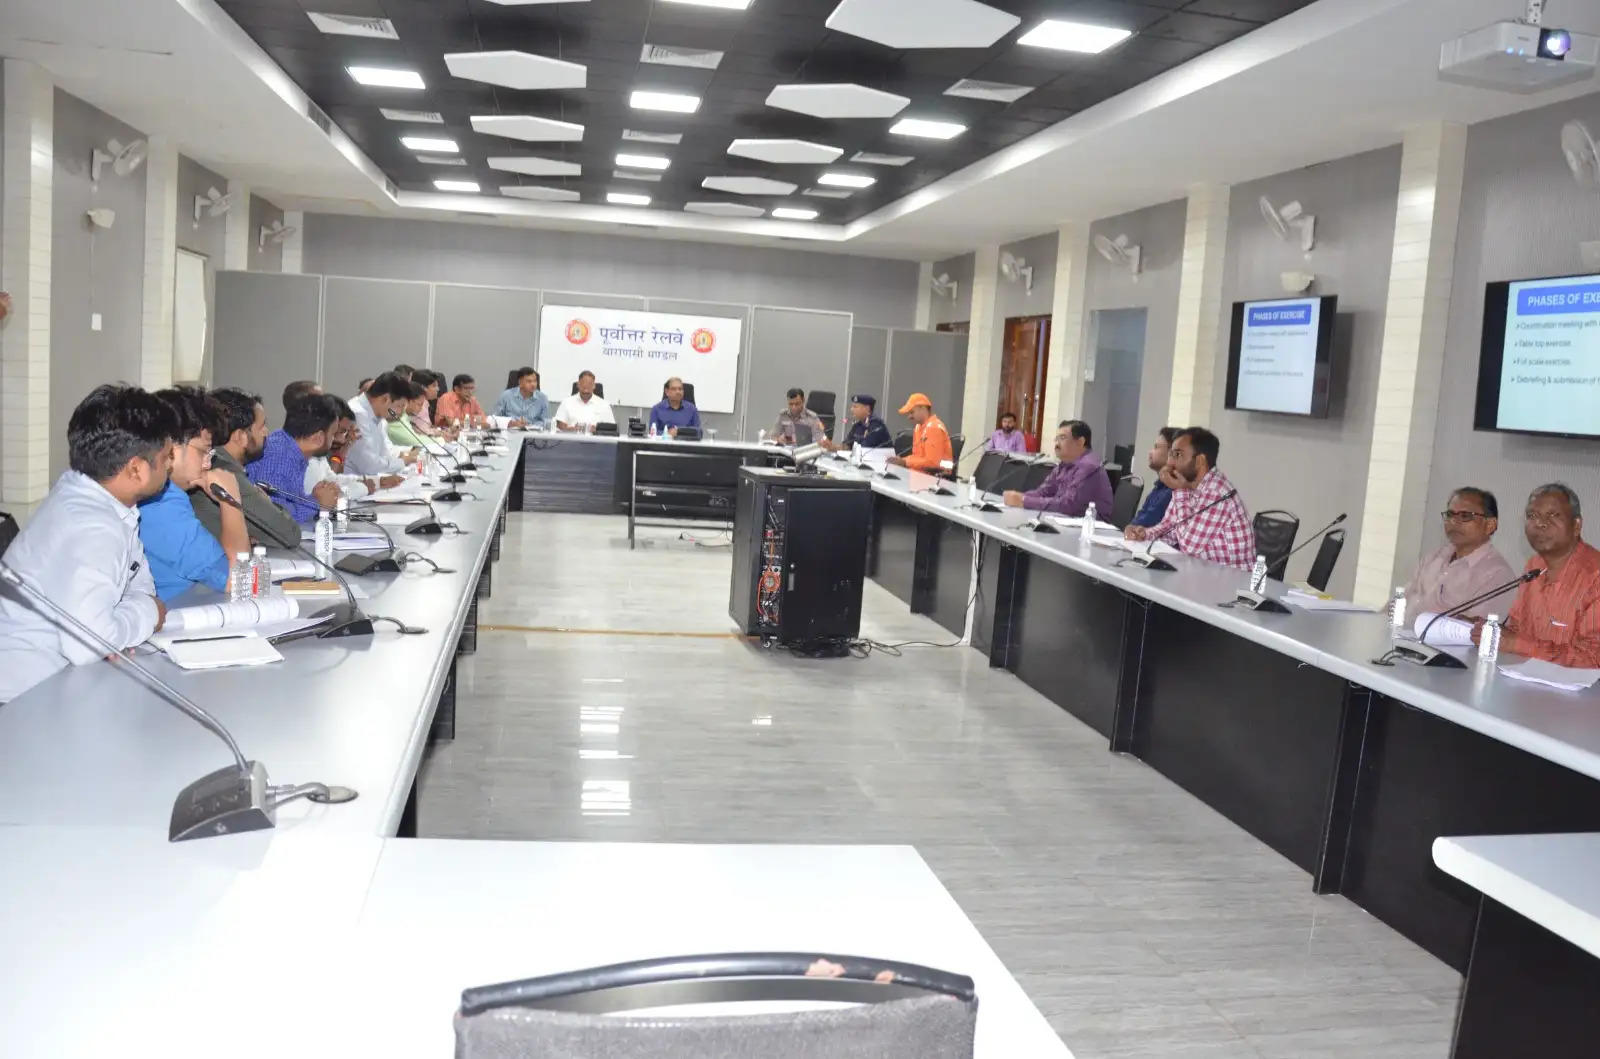 Varanasi News: मंडल कार्यालय के भारतेन्दु सभा कक्ष में आज 11वीं वाहिनी राष्ट्रीय आपदा मोचन बल ( NDRF) वाराणसी के साथ संरक्षा बैठक का आयोजन